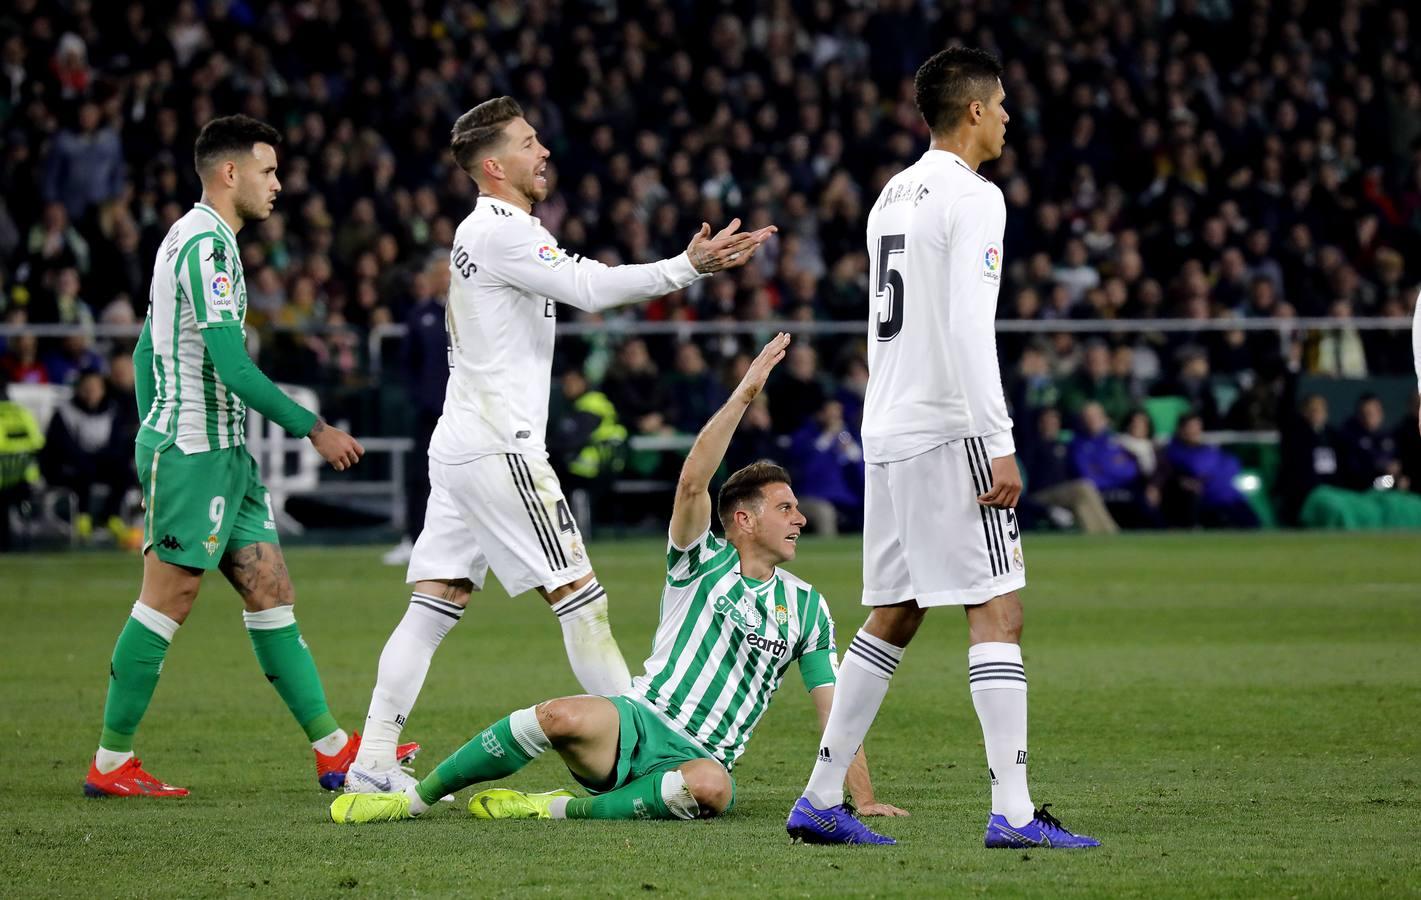 Las mejores imágenes del partido Betis - Real Madrid